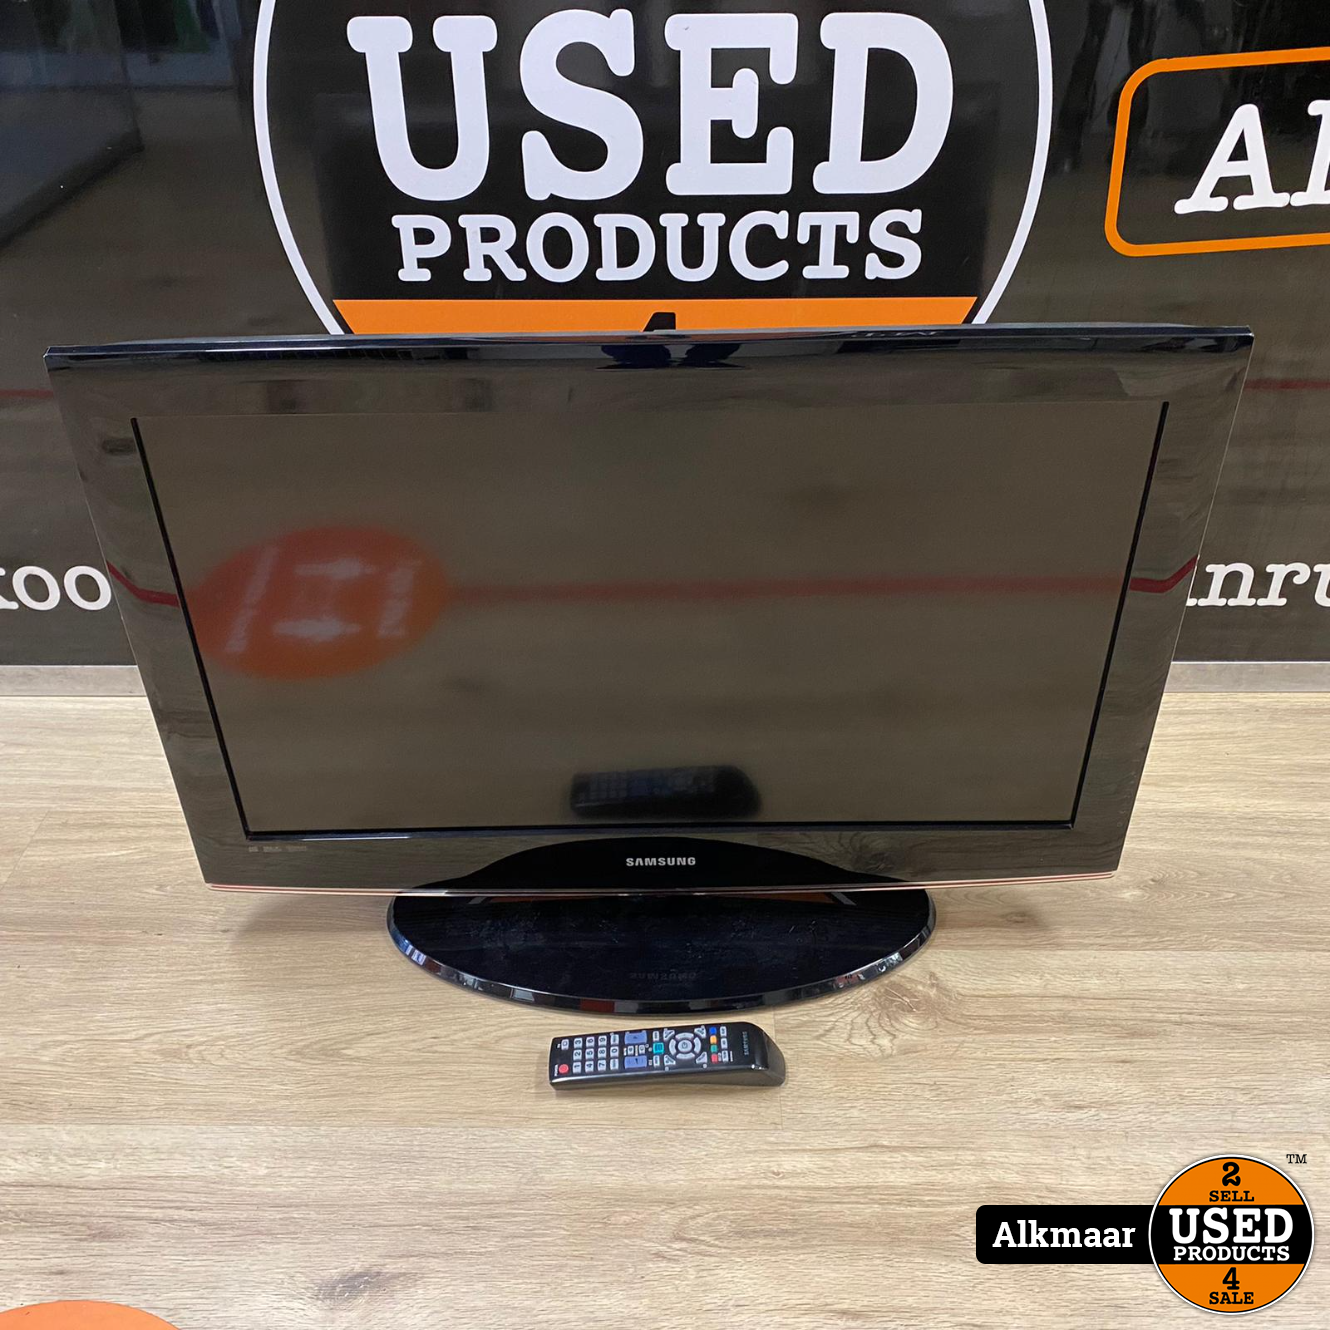 Samsung LE32B450C4W 32 inch HD-ready TV + - Used Products Alkmaar